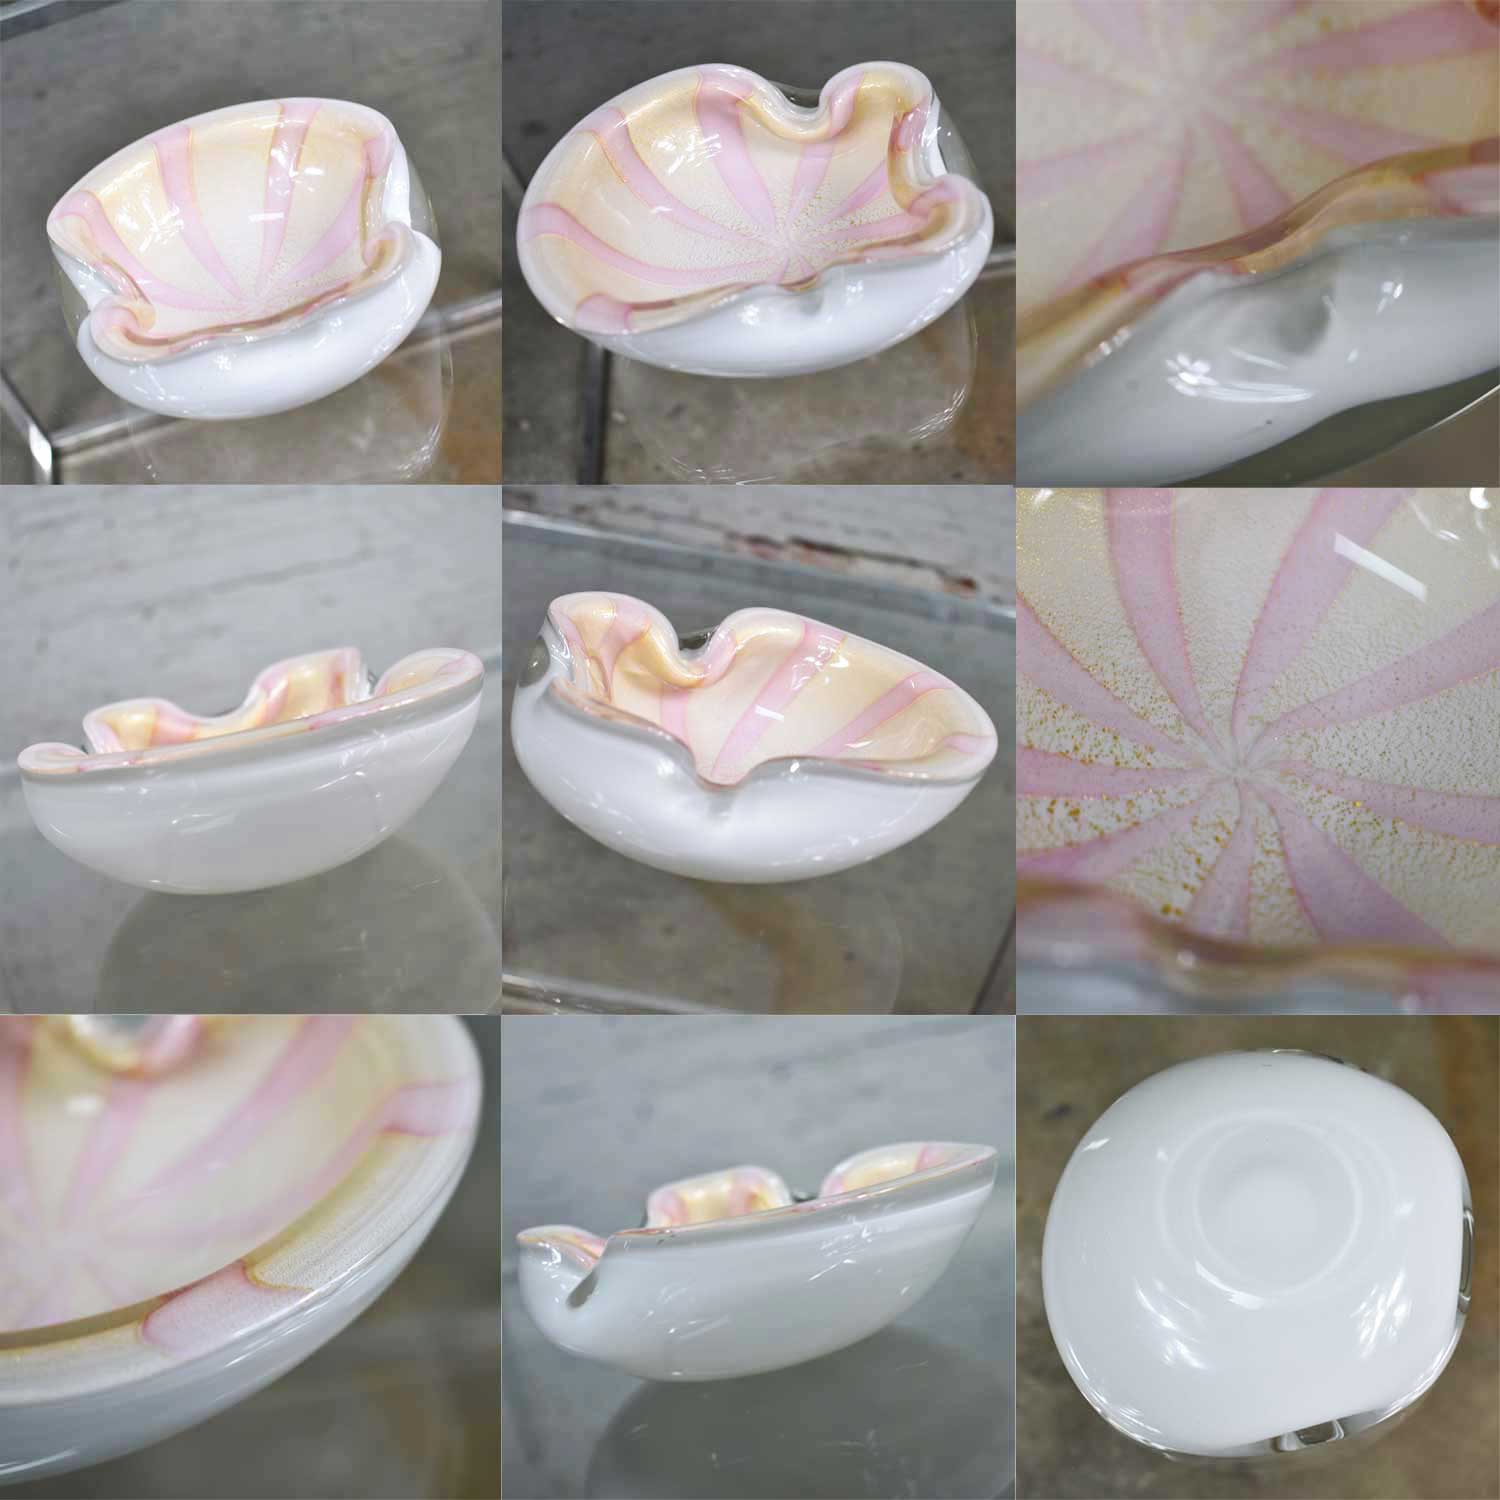 Set 4 Pieces Italian Murano Glass Dishes Attributed to Barbini & Seguso in Avventurnia Bullicante & Foglia D’Oro